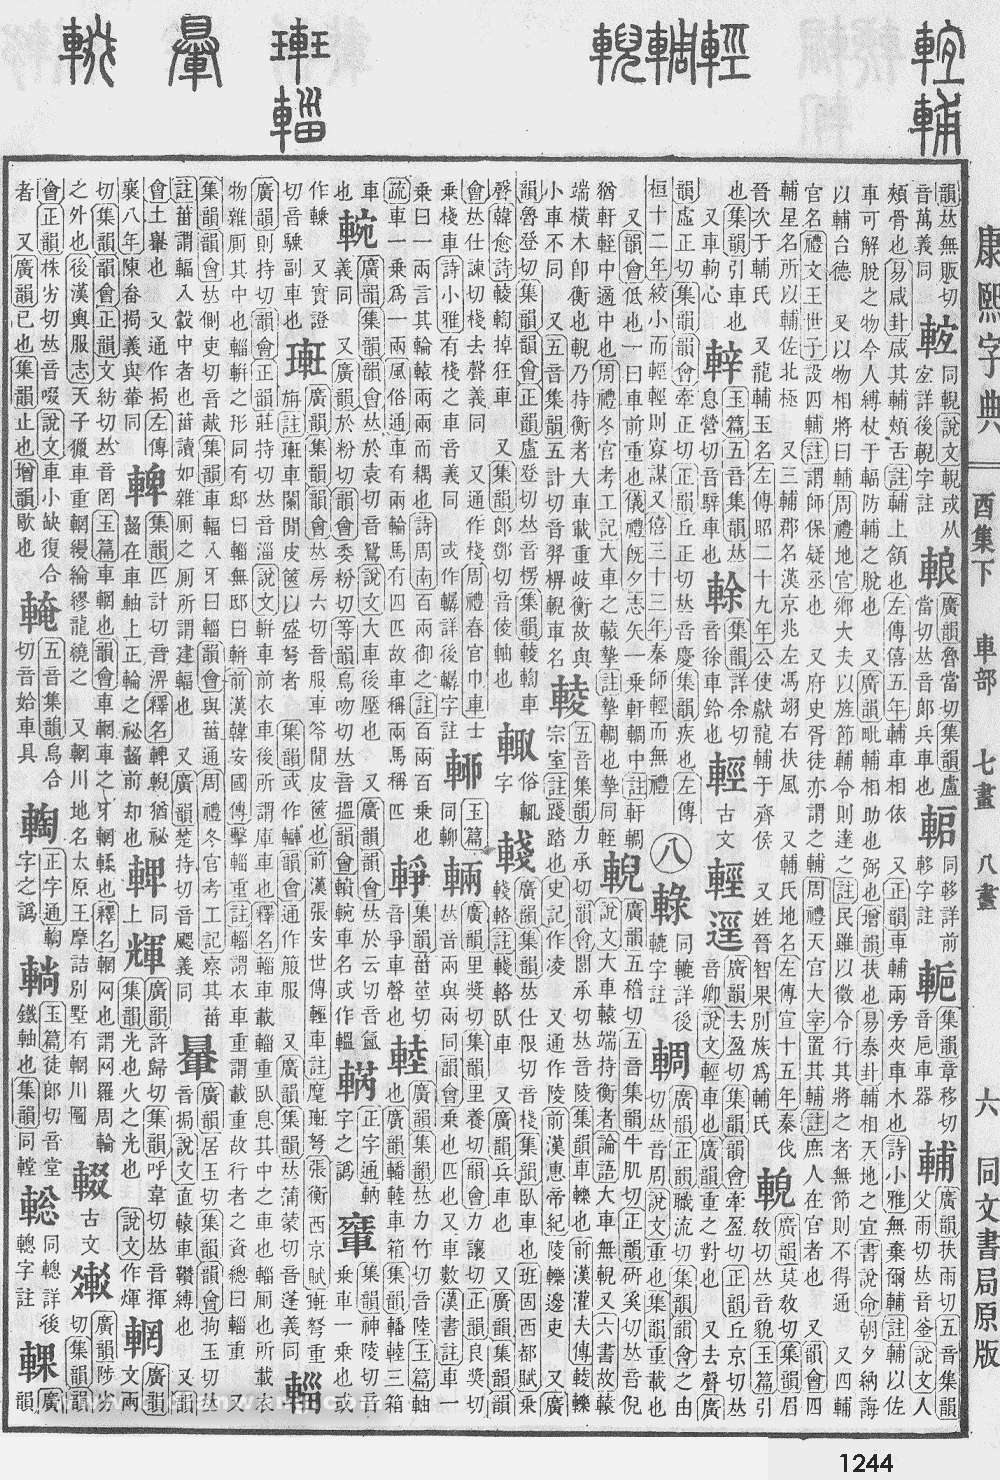 康熙字典掃描版第1244頁